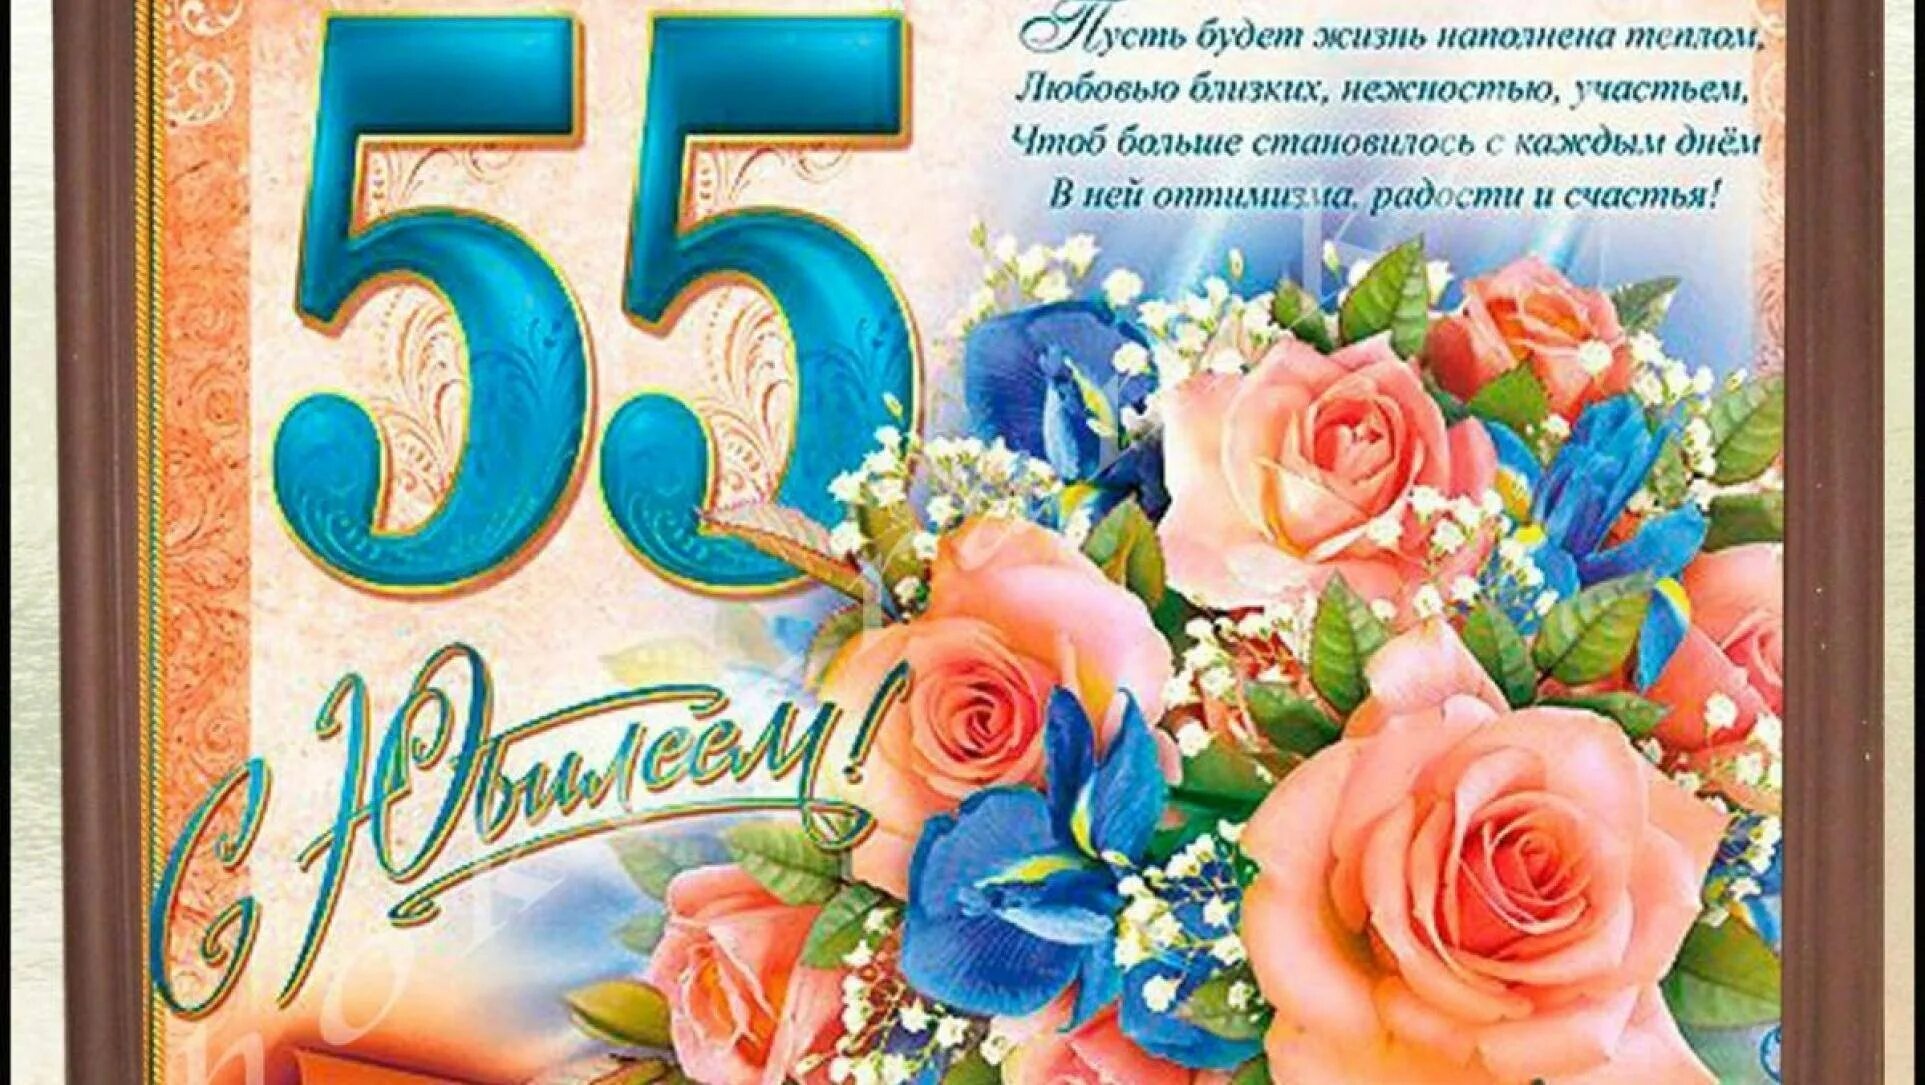 Красивые поздравления с юбилейным днем рождения. С юбилеем 55. Поздравление с юбилеем 55 женщине. Открытка "с юбилеем! 55". Открытка с юбилеем 55 лет женщине с поздравлением.